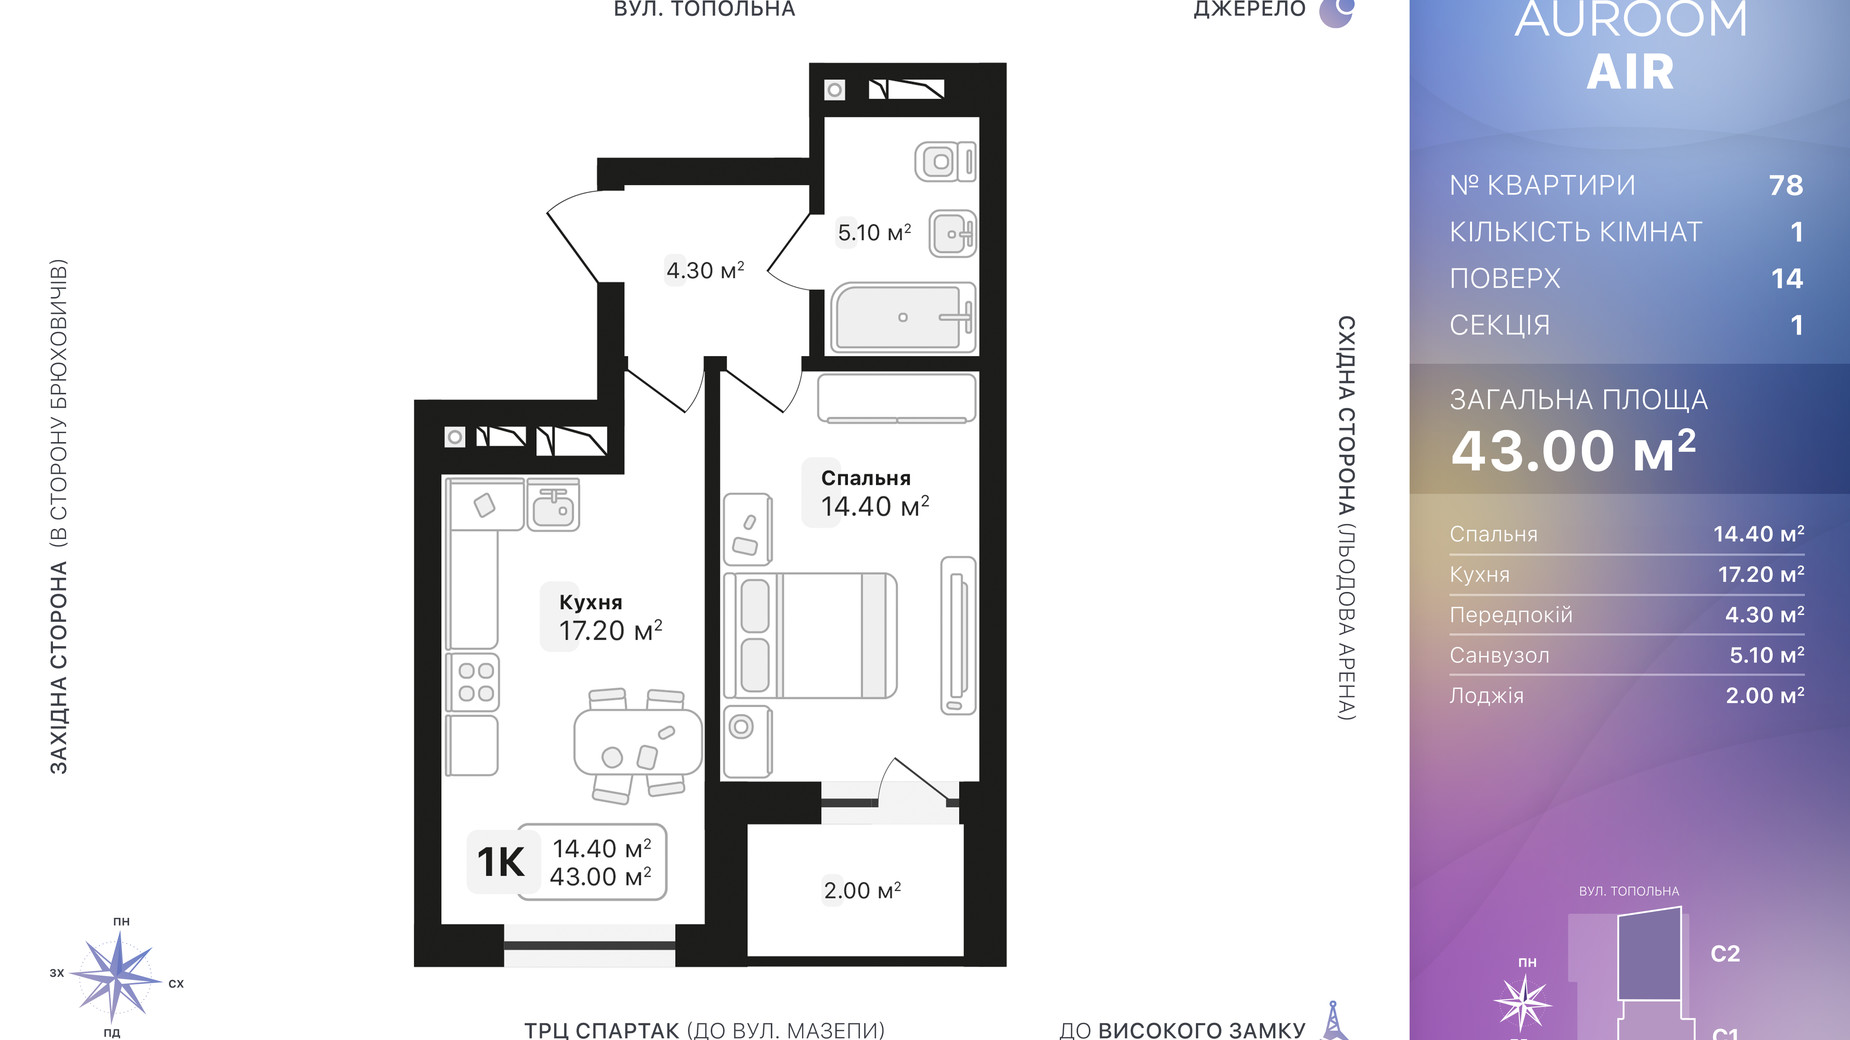 Планировка 1-комнатной квартиры в ЖК Auroom Air 43 м², фото 552303